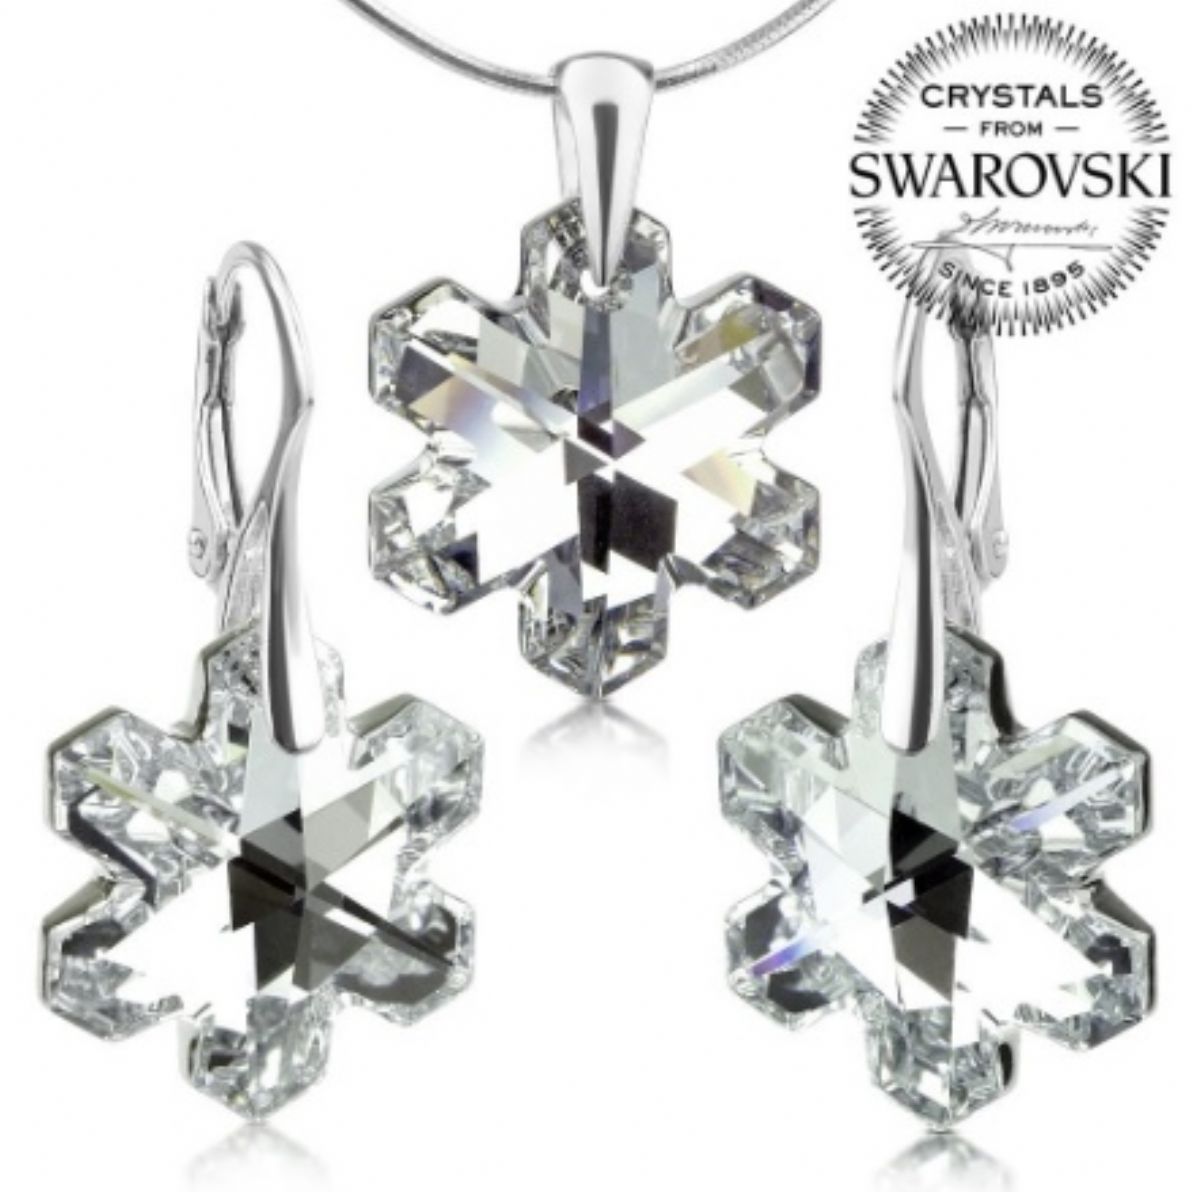 Stříbrný set s krystaly Swarovski - Vločka crystal 1/1